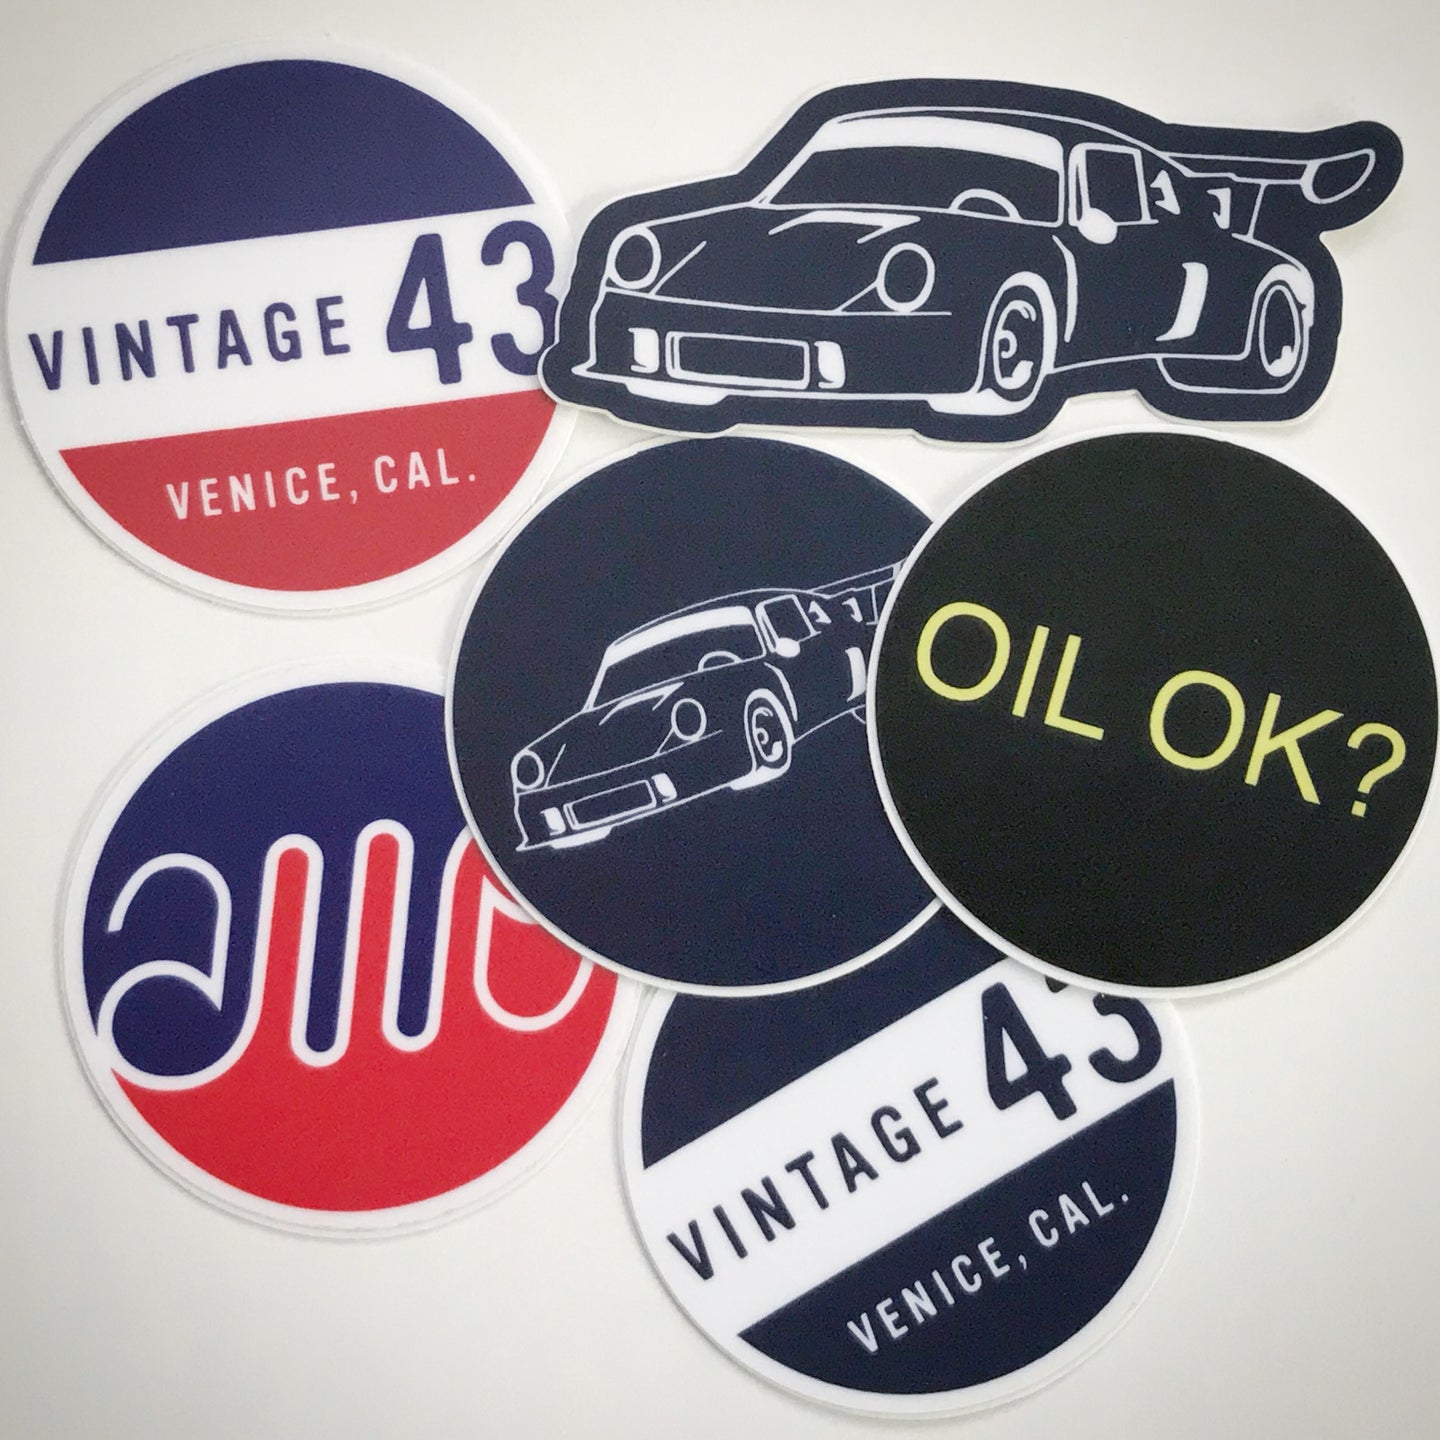 Vintage 43 - Set of 6 Decals